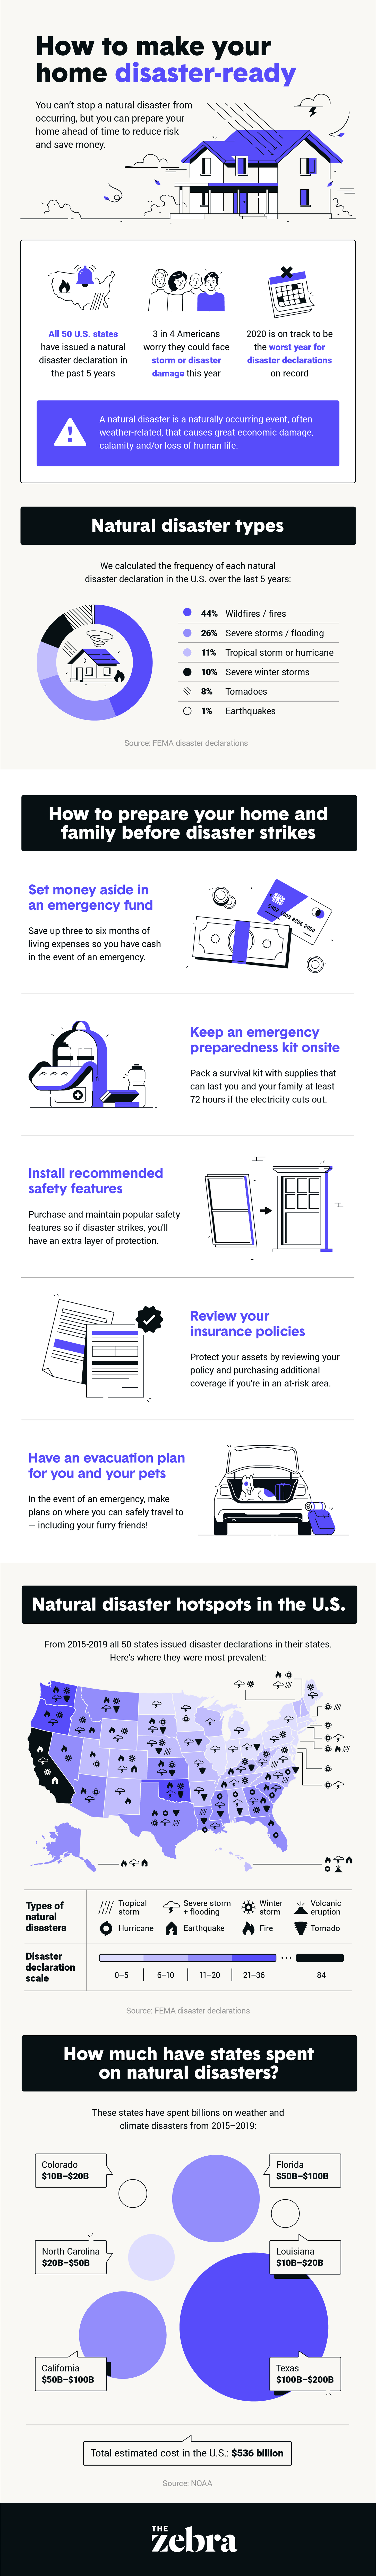 How to Get Your Home Disaster-Ready; infographic courtesy of <a href="TheZebra.com">TheZebra.com</a>.